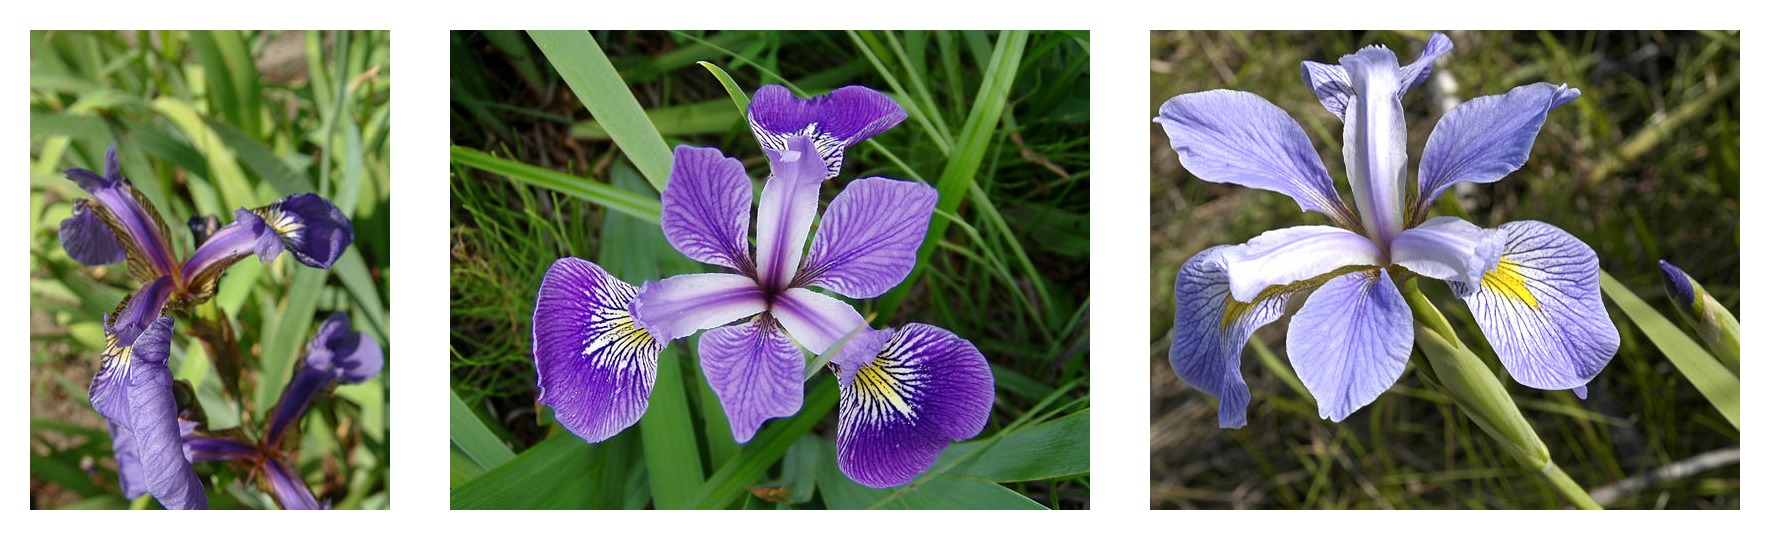 Petal geometry compared for three iris species: Iris setosa, Iris virginica, and Iris versicolor